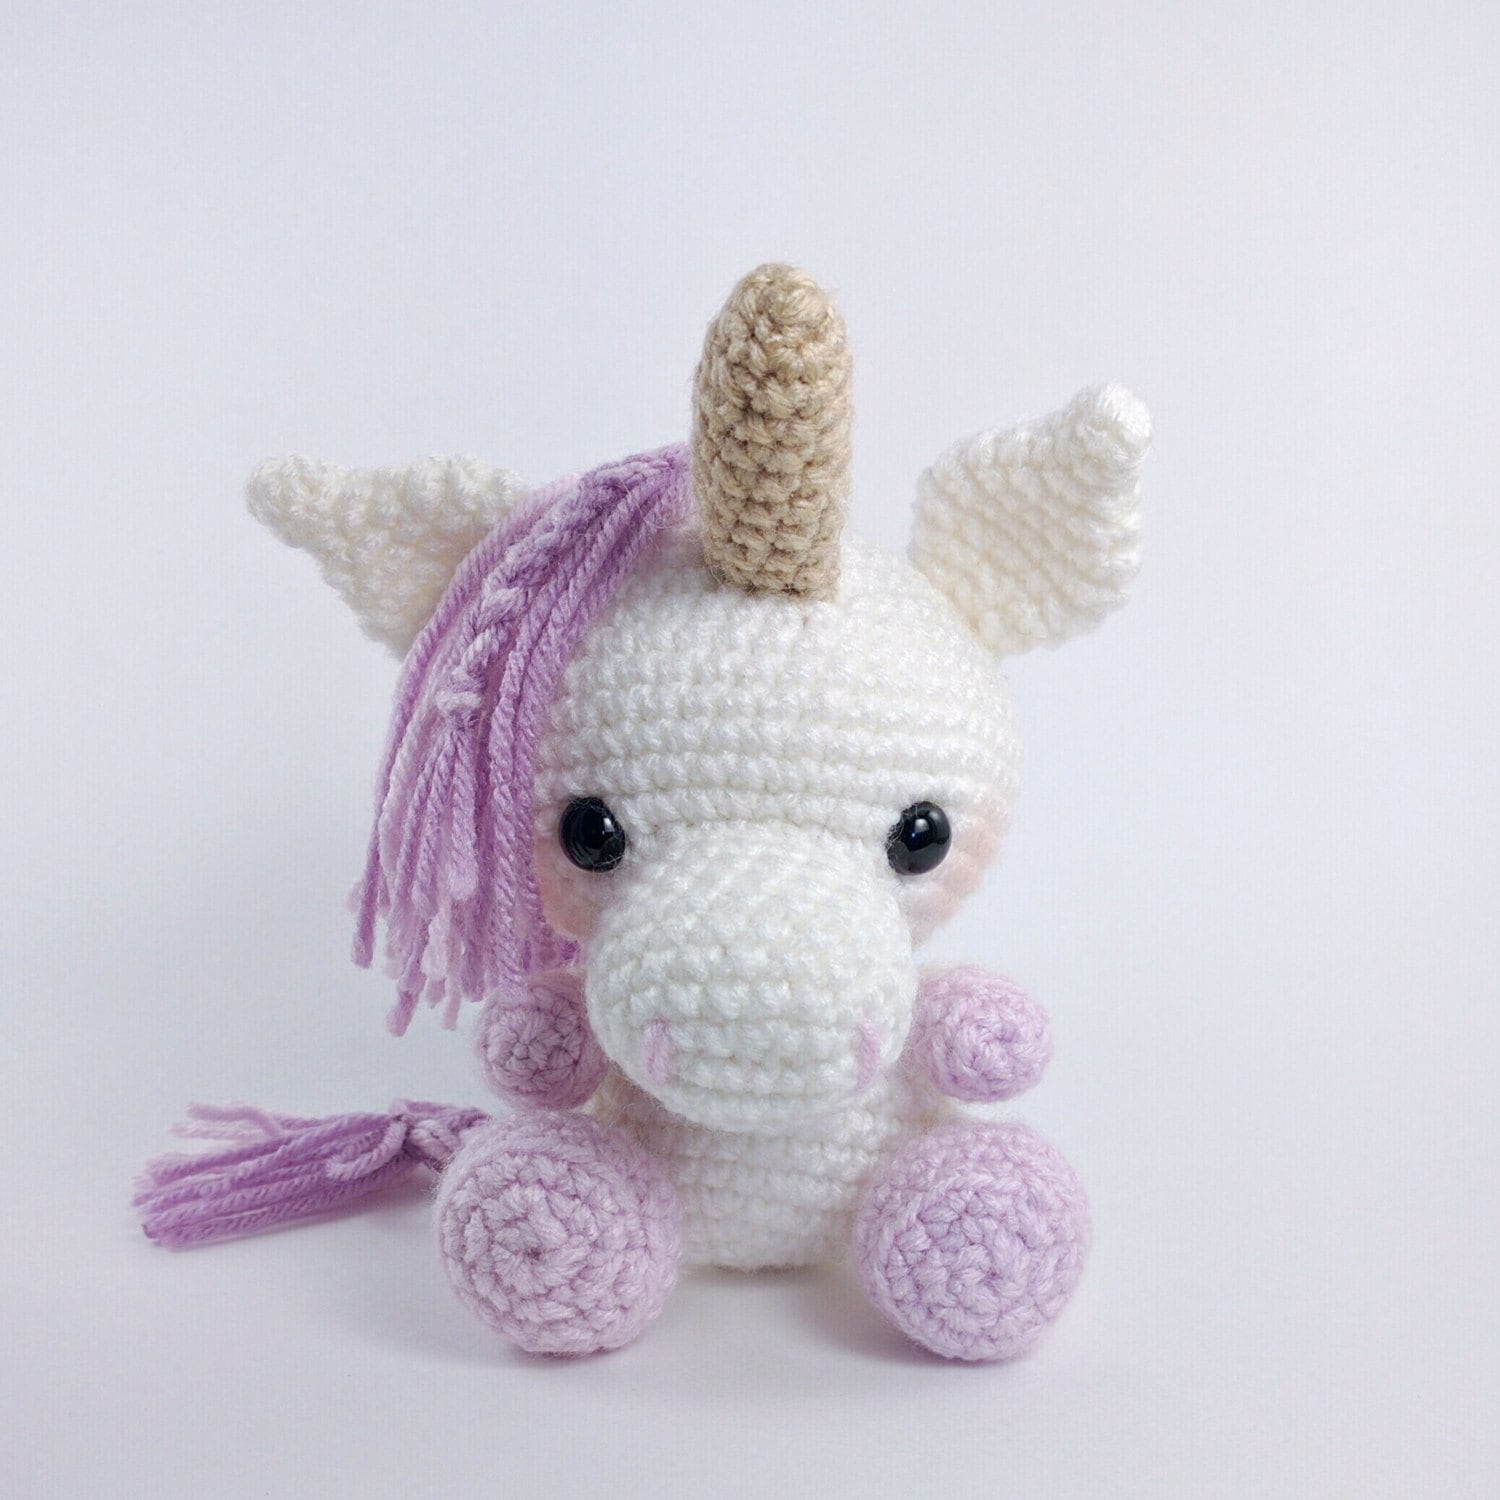 PATTERN: Crochet unicorn pattern amigurumi unicorn pattern